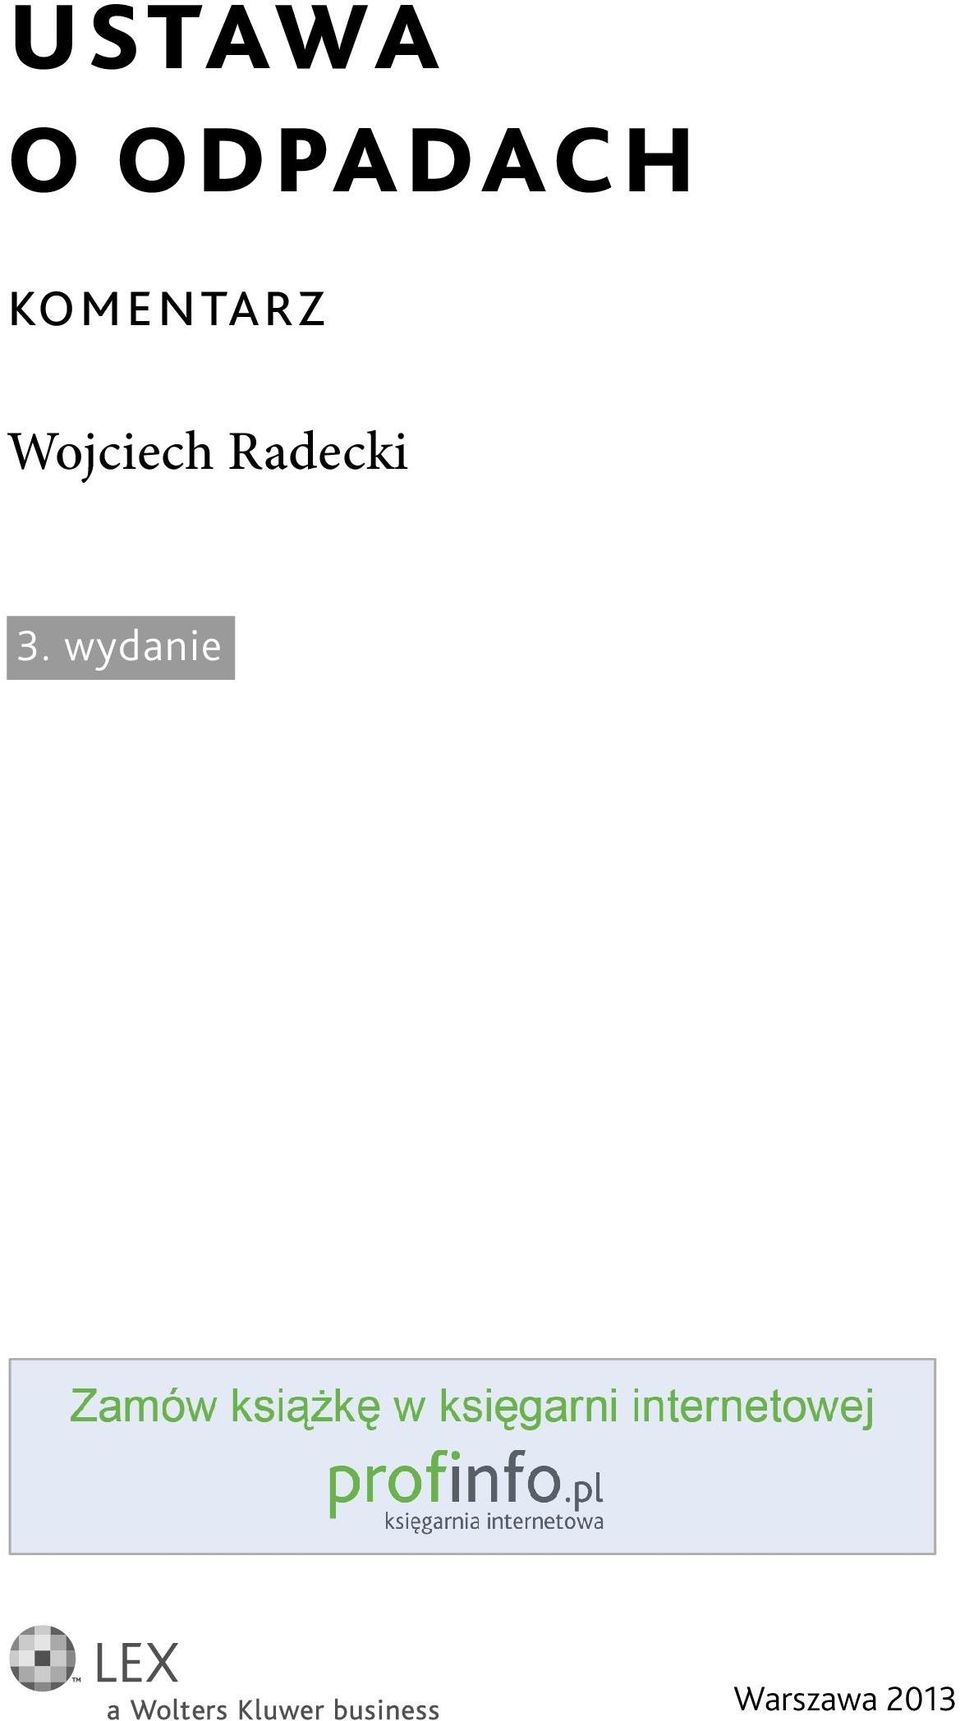 Wojciech Radecki